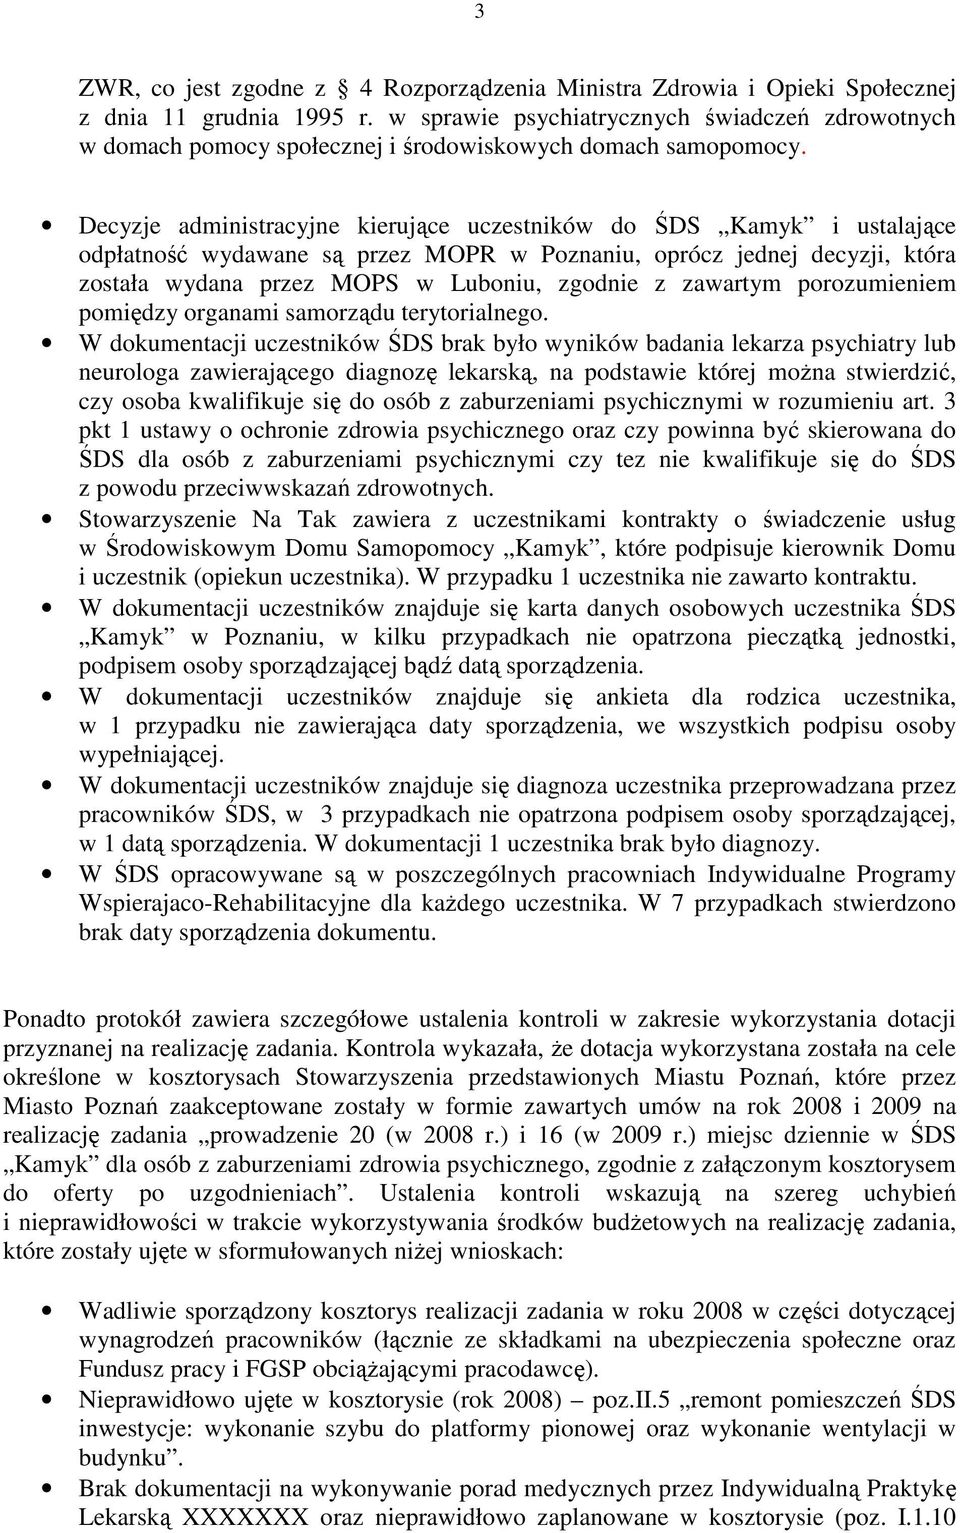 Decyzje administracyjne kierujące uczestników do ŚDS Kamyk i ustalające odpłatność wydawane są przez MOPR w Poznaniu, oprócz jednej decyzji, która została wydana przez MOPS w Luboniu, zgodnie z